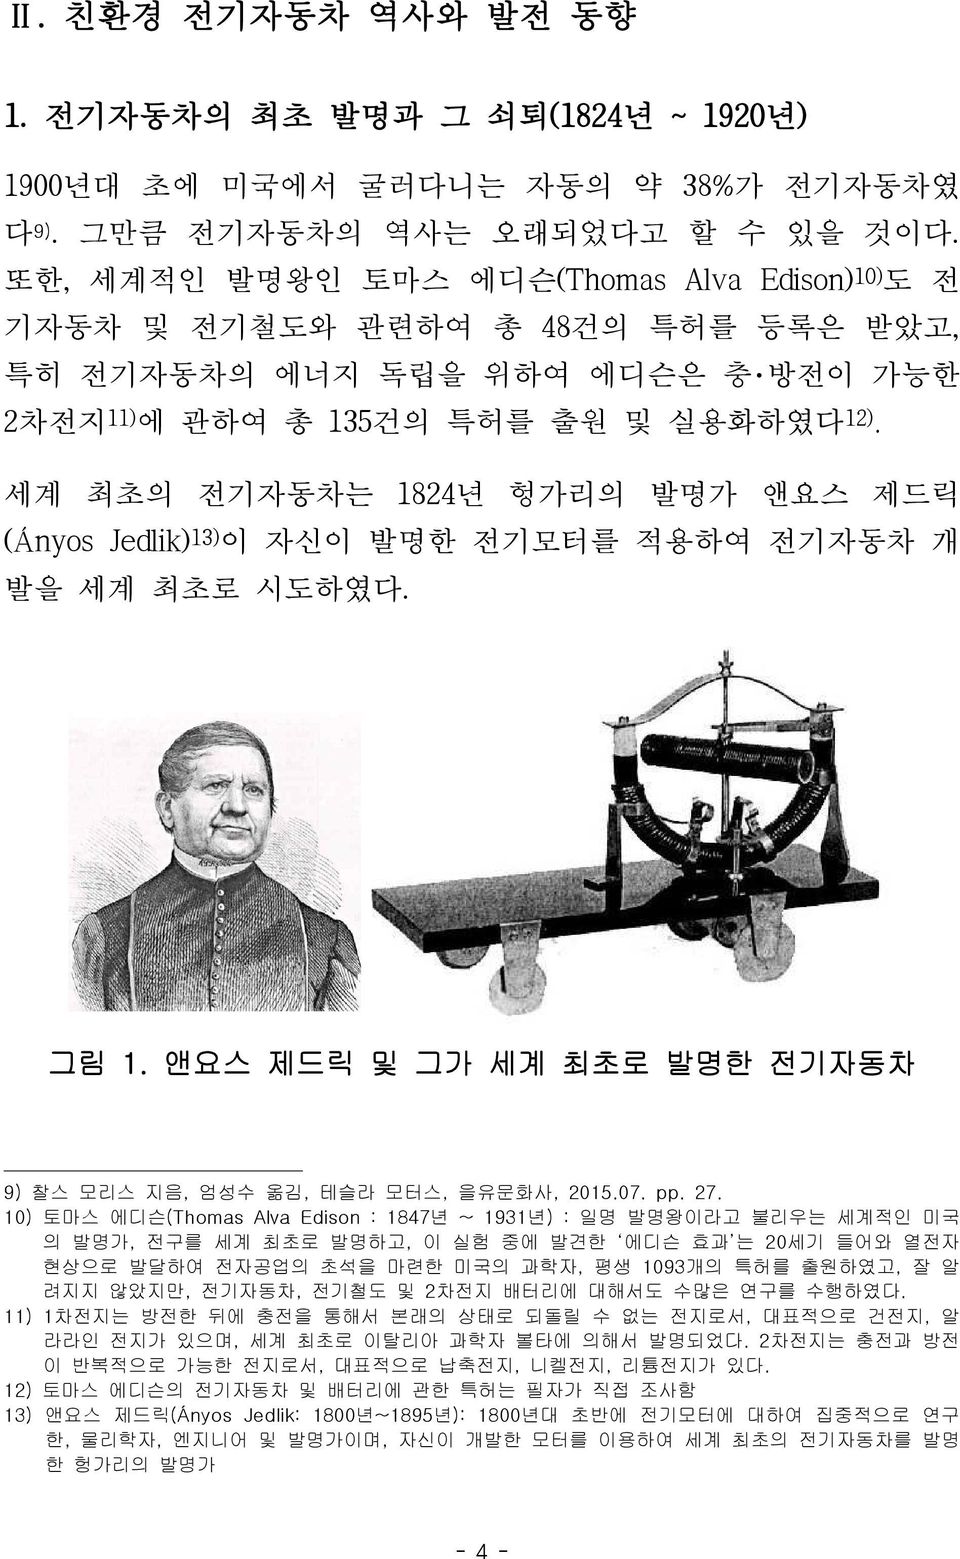 세계 최초의 전기자동차는 1824년 헝가리의 발명가 앤요스 제드릭 (Ányos Jedlik) 13) 이 자신이 발명한 전기모터를 적용하여 전기자동차 개 발을 세계 최초로 시도하였다. 그림 1. 앤요스 제드릭 및 그가 세계 최초로 발명한 전기자동차 9) 찰스 모리스 지음, 엄성수 옮김, 테슬라 모터스, 을유문화사, 2015.07. pp. 27.